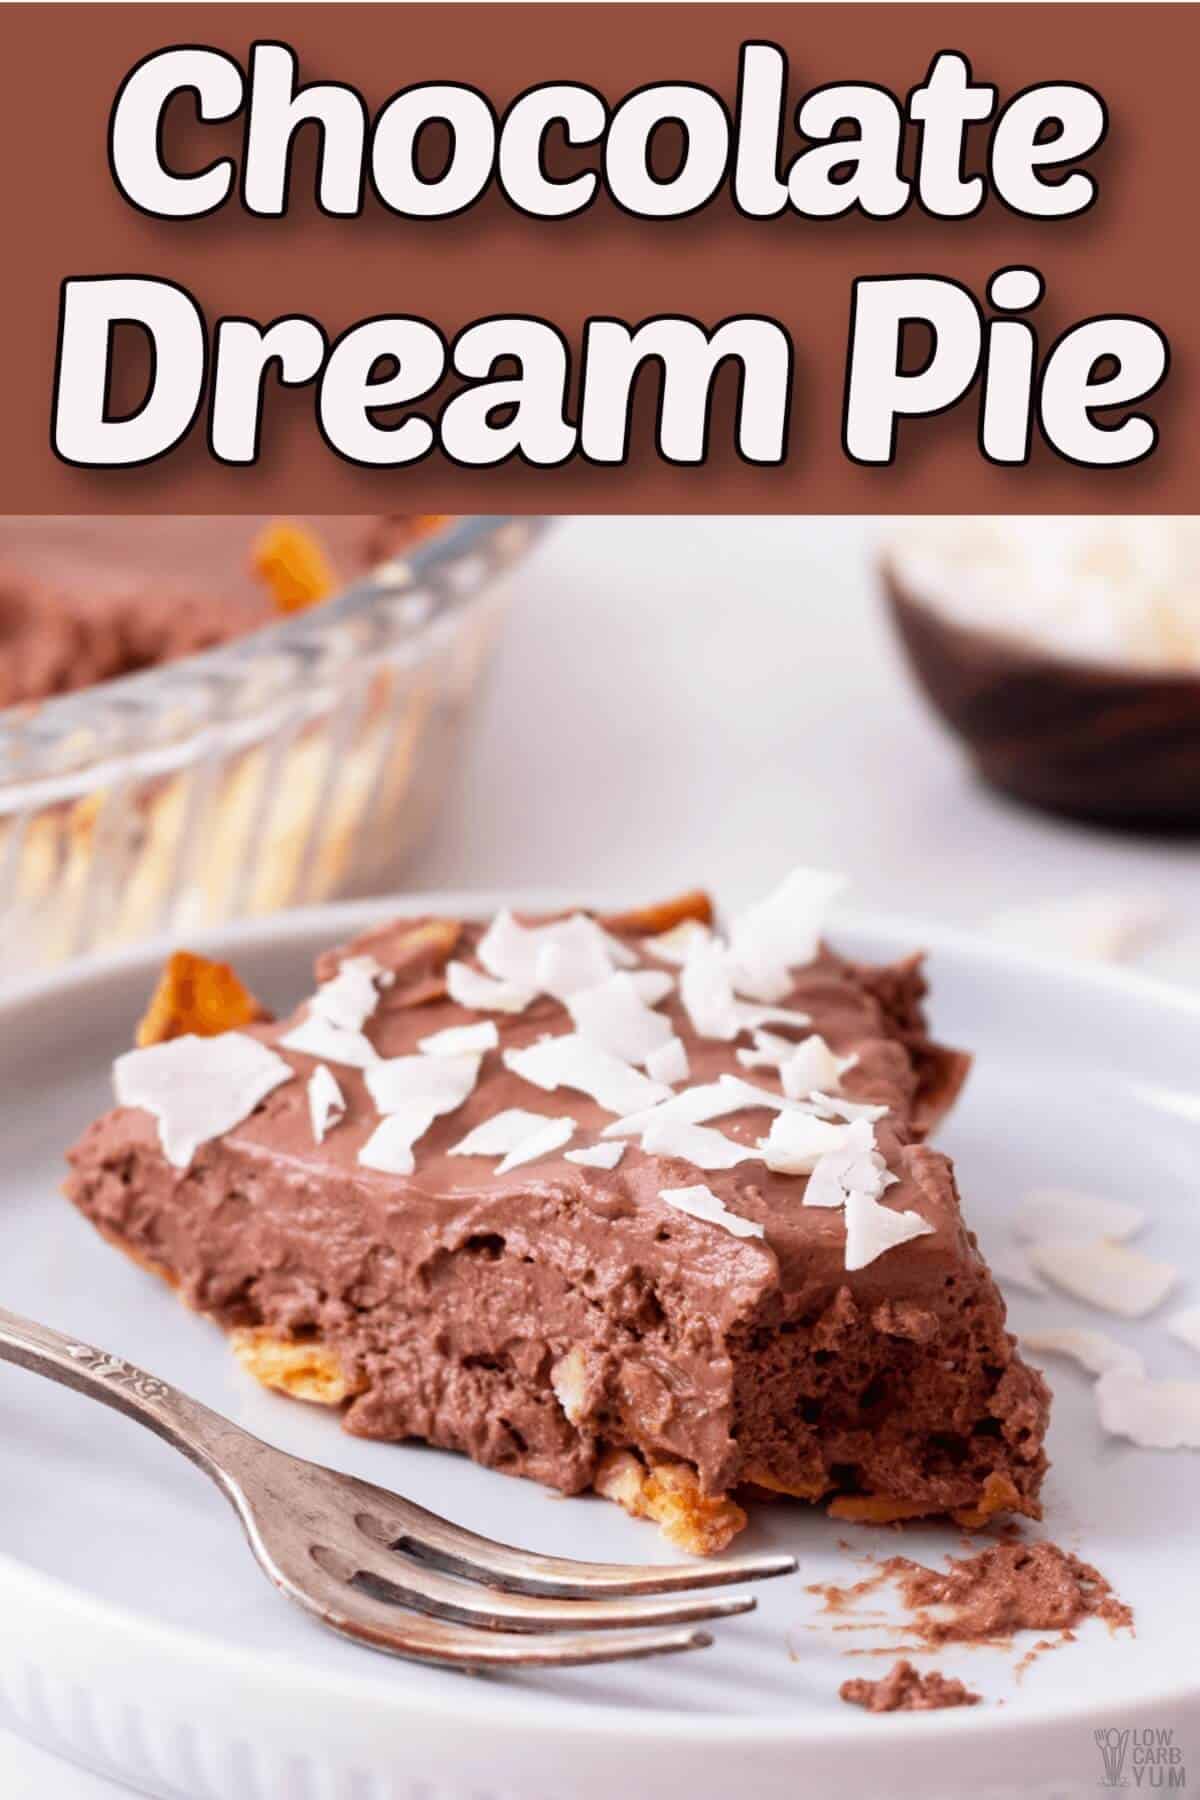 chocolate dream pie with coconut crust recipe